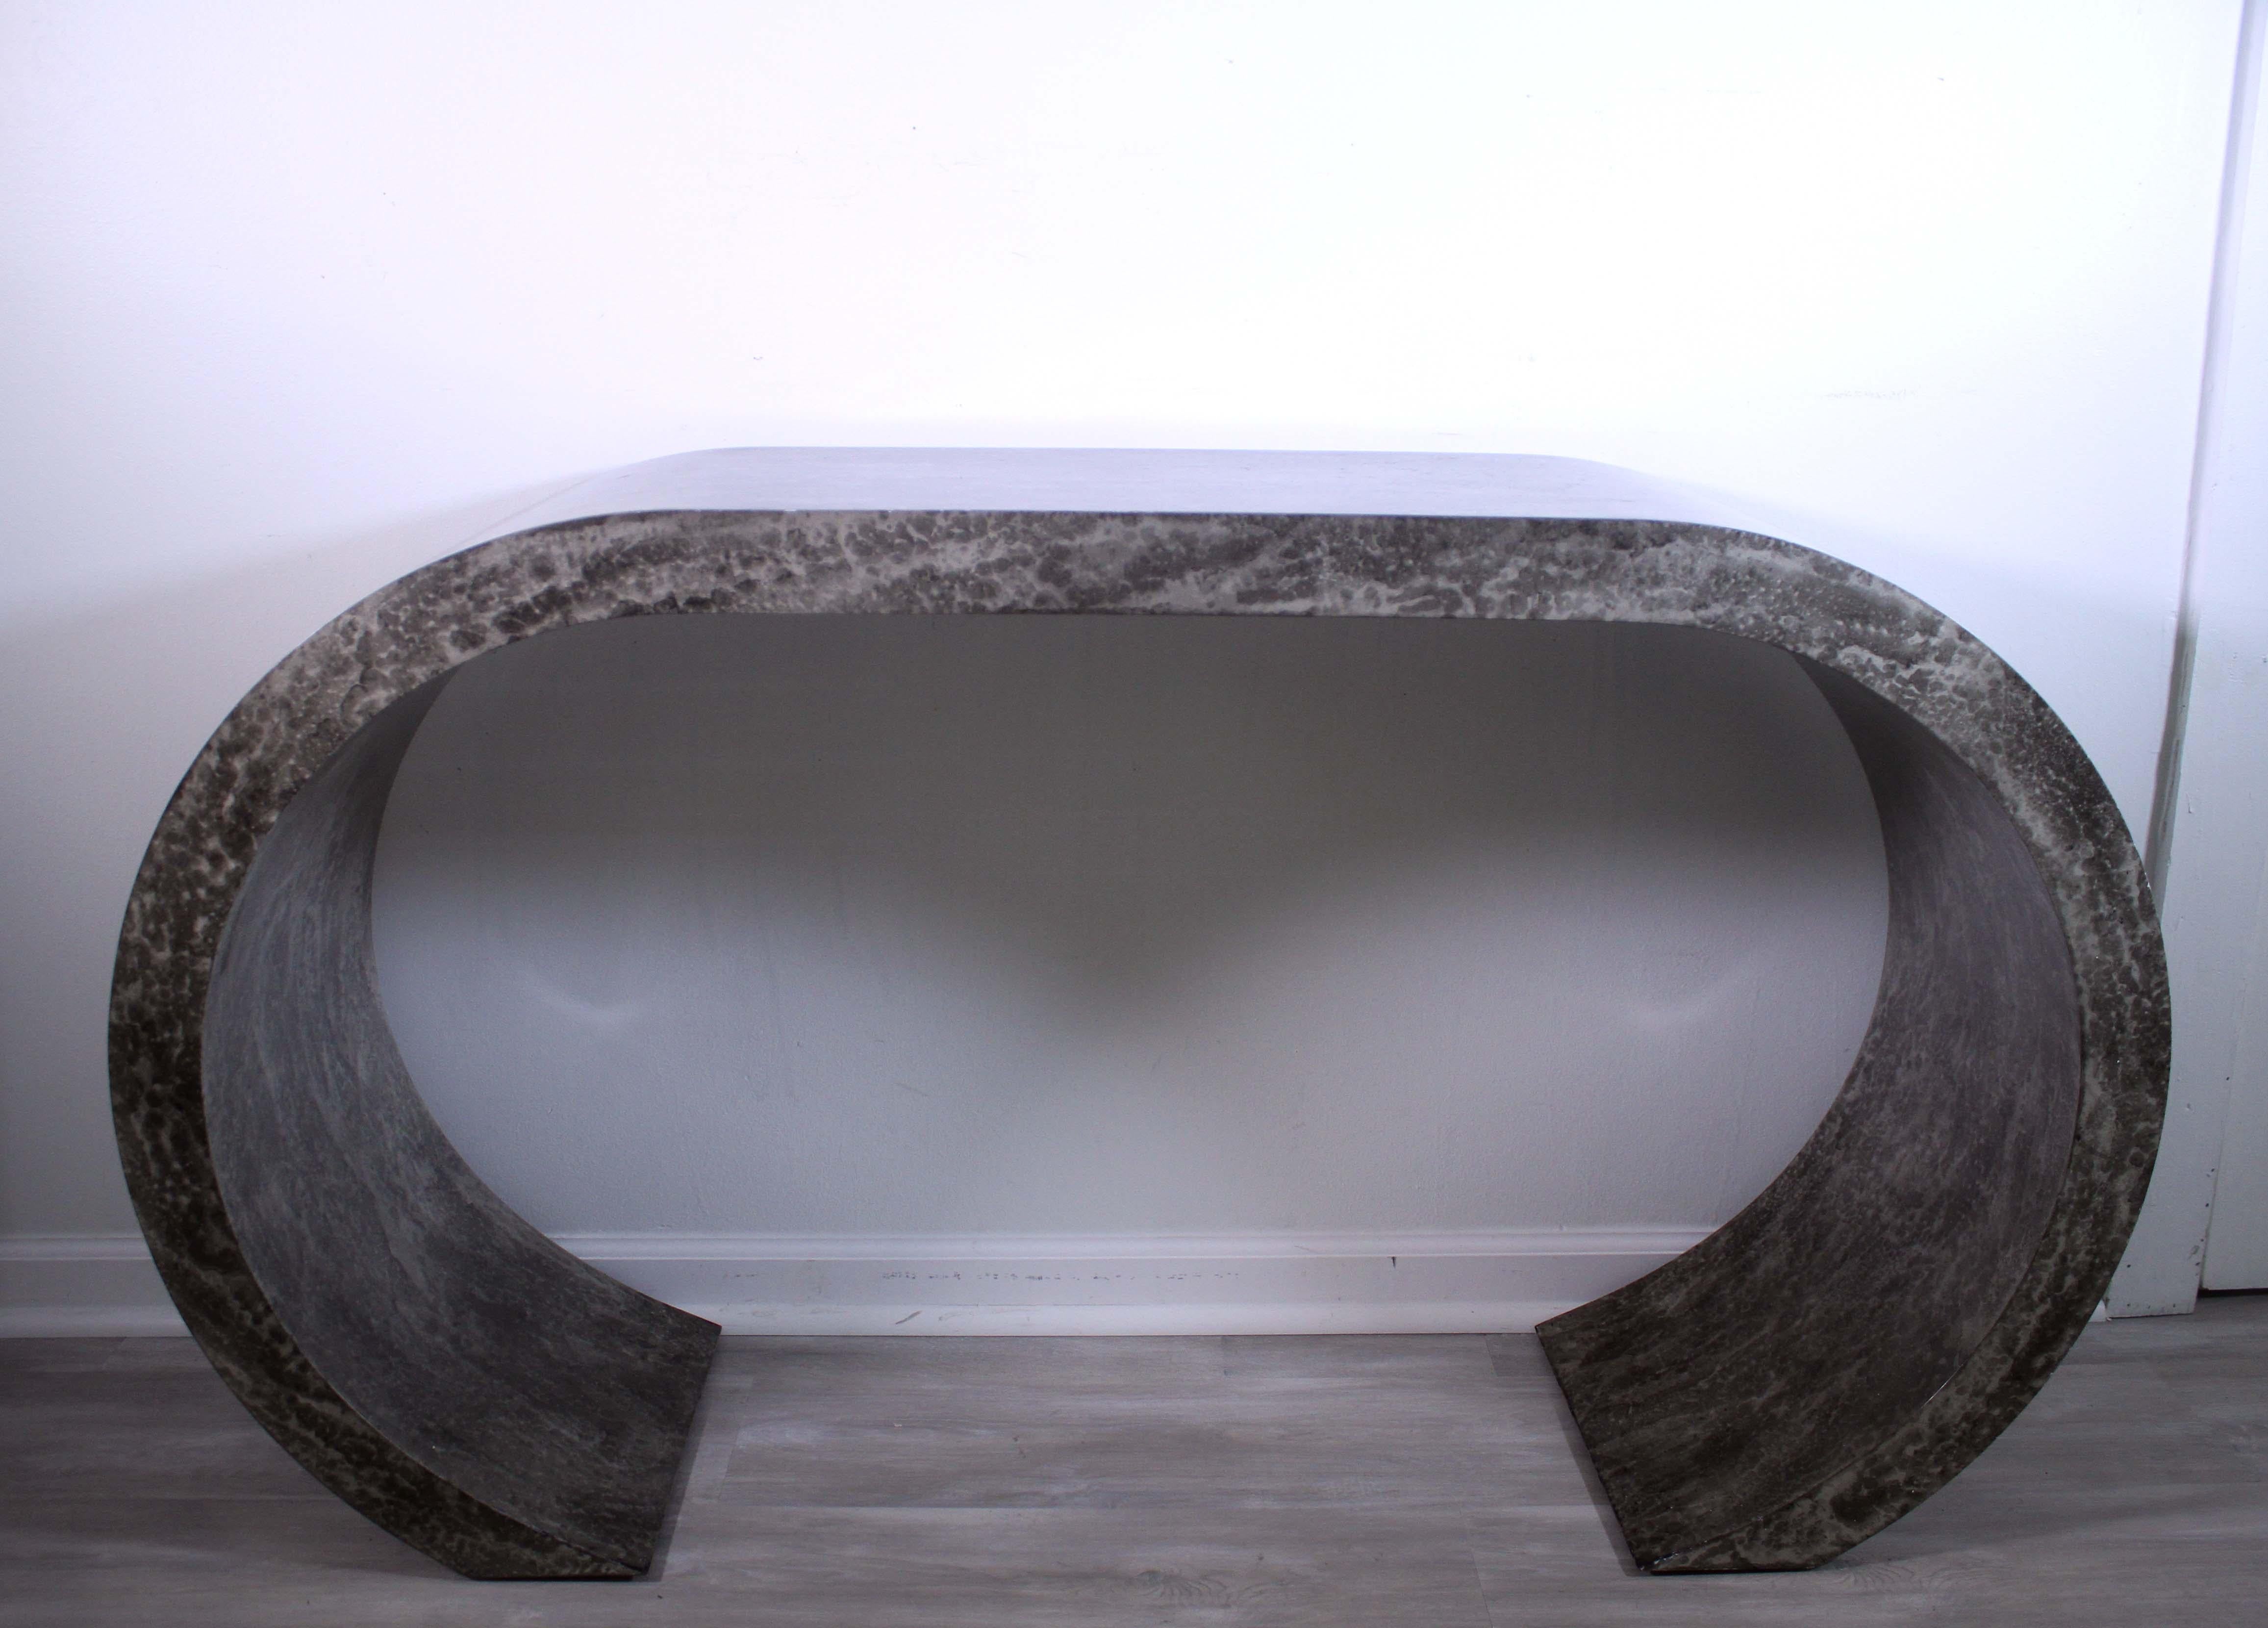 Cette table console postmoderne incurvée en fausse pierre est un meuble contemporain et unique, parfait pour ajouter une touche moderne à n'importe quel espace. Le design élégant présente un profil incurvé et un dessus en fausse pierre qui attire